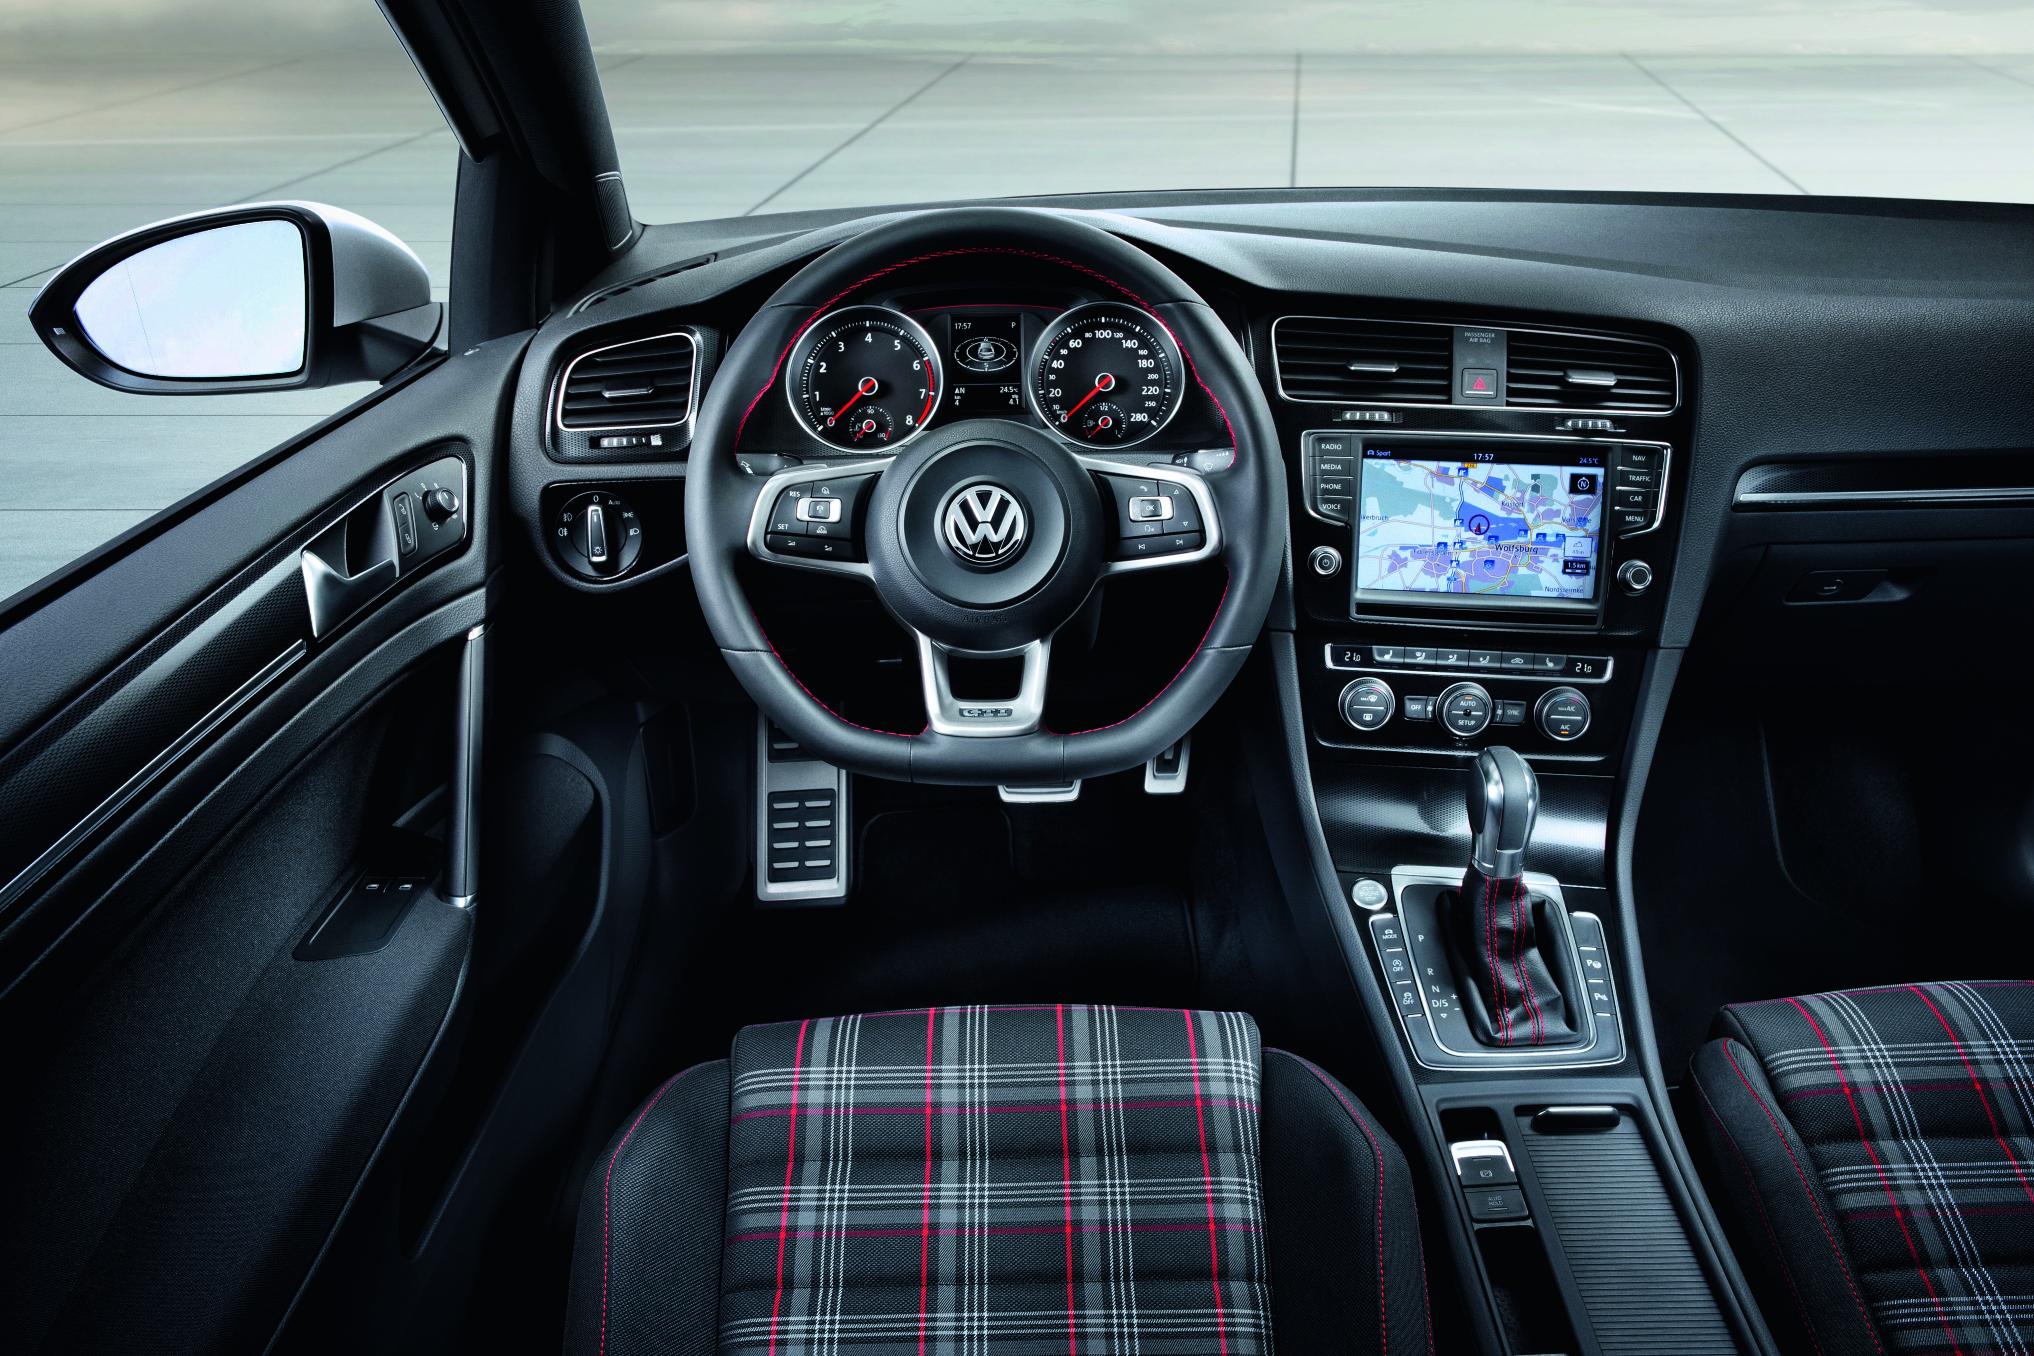 Volkswagen Golf GTI Concept